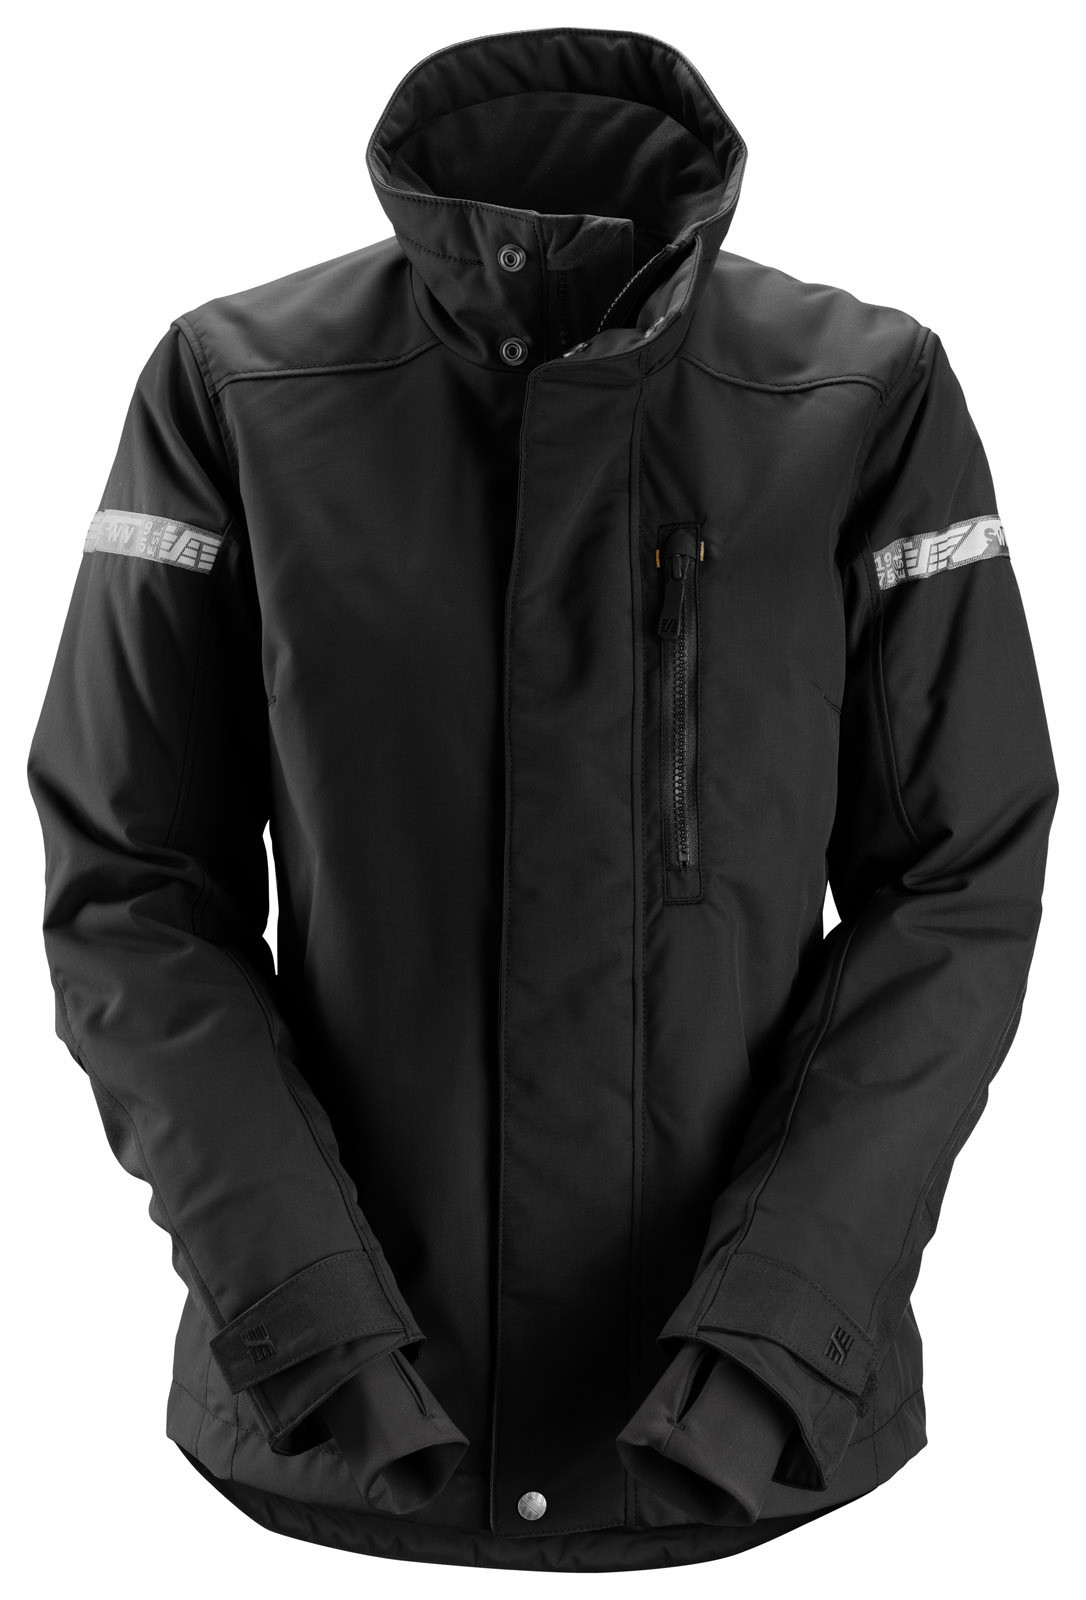 Dámska zimná bunda Snickers® AllroundWork 37.5® - veľkosť: M, farba: čierna